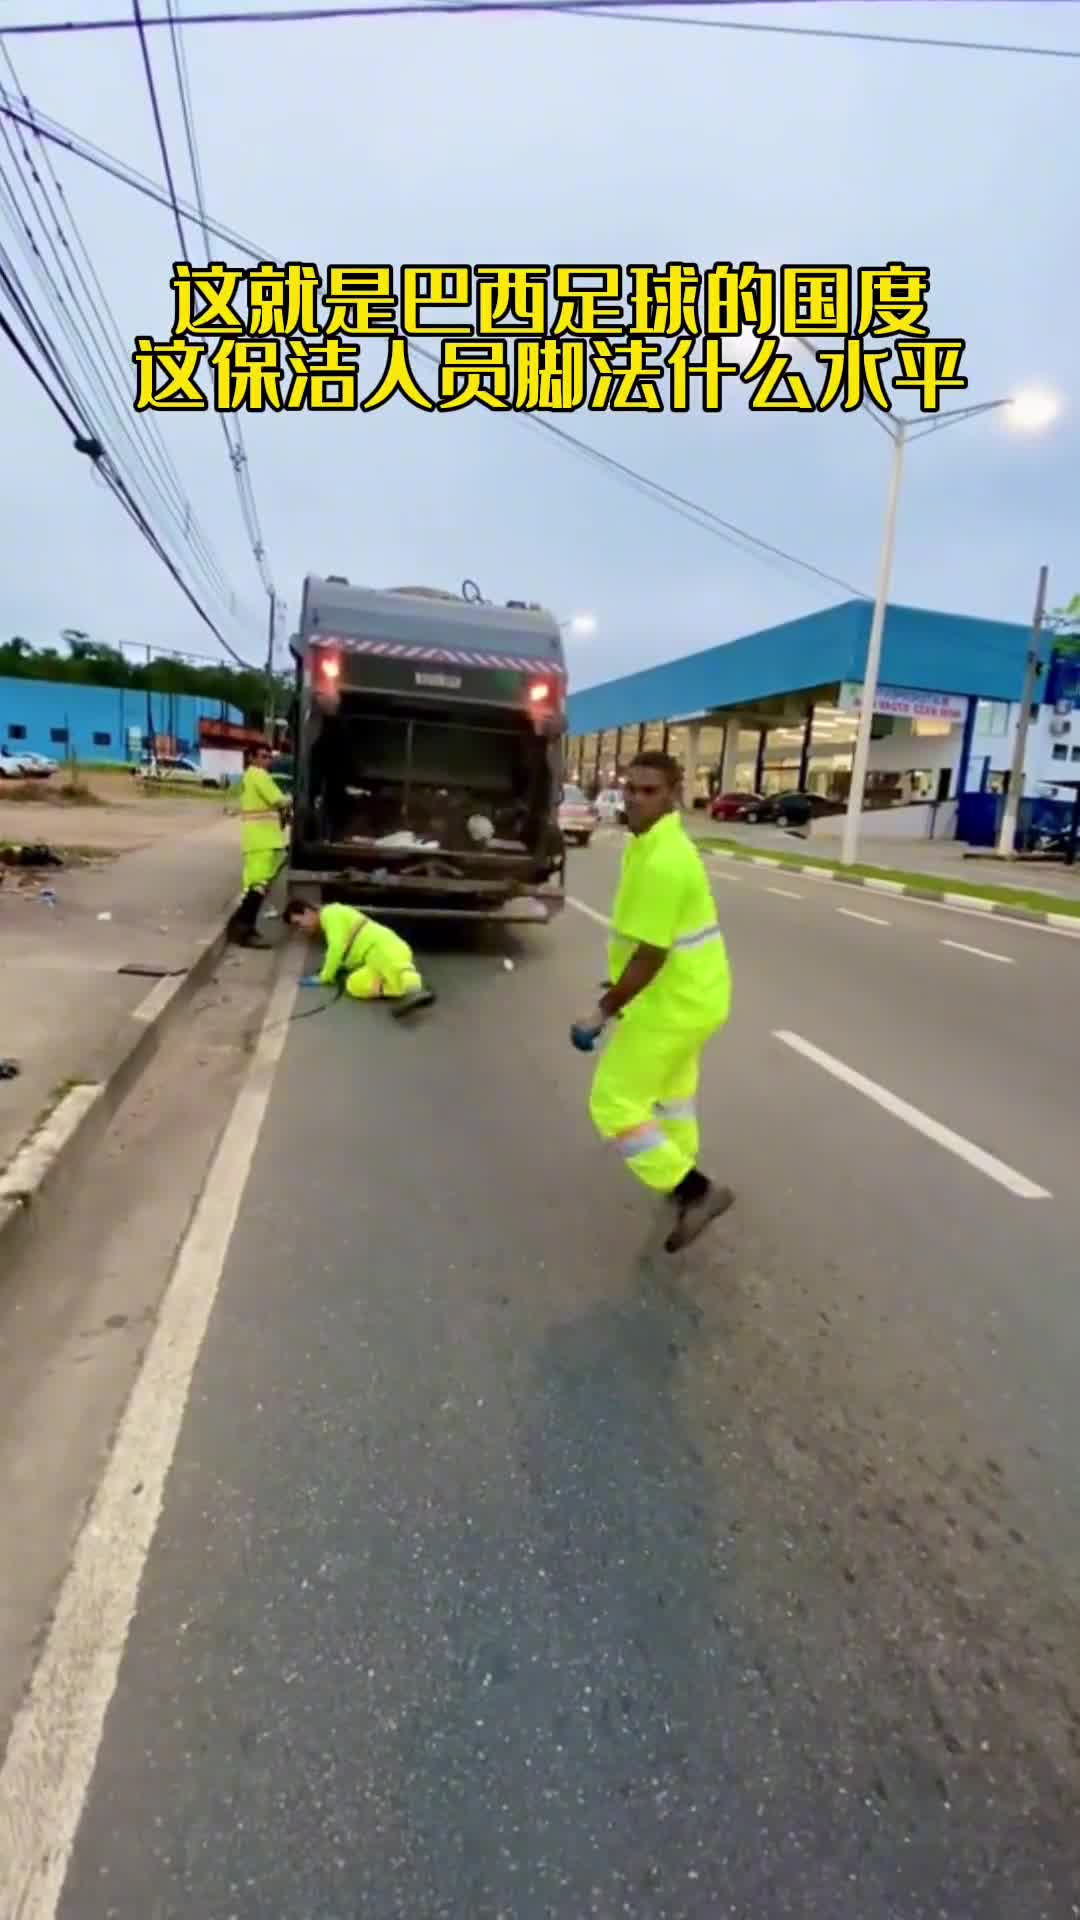 真·足球国度！巴西的保洁人员也能秀一手好脚法